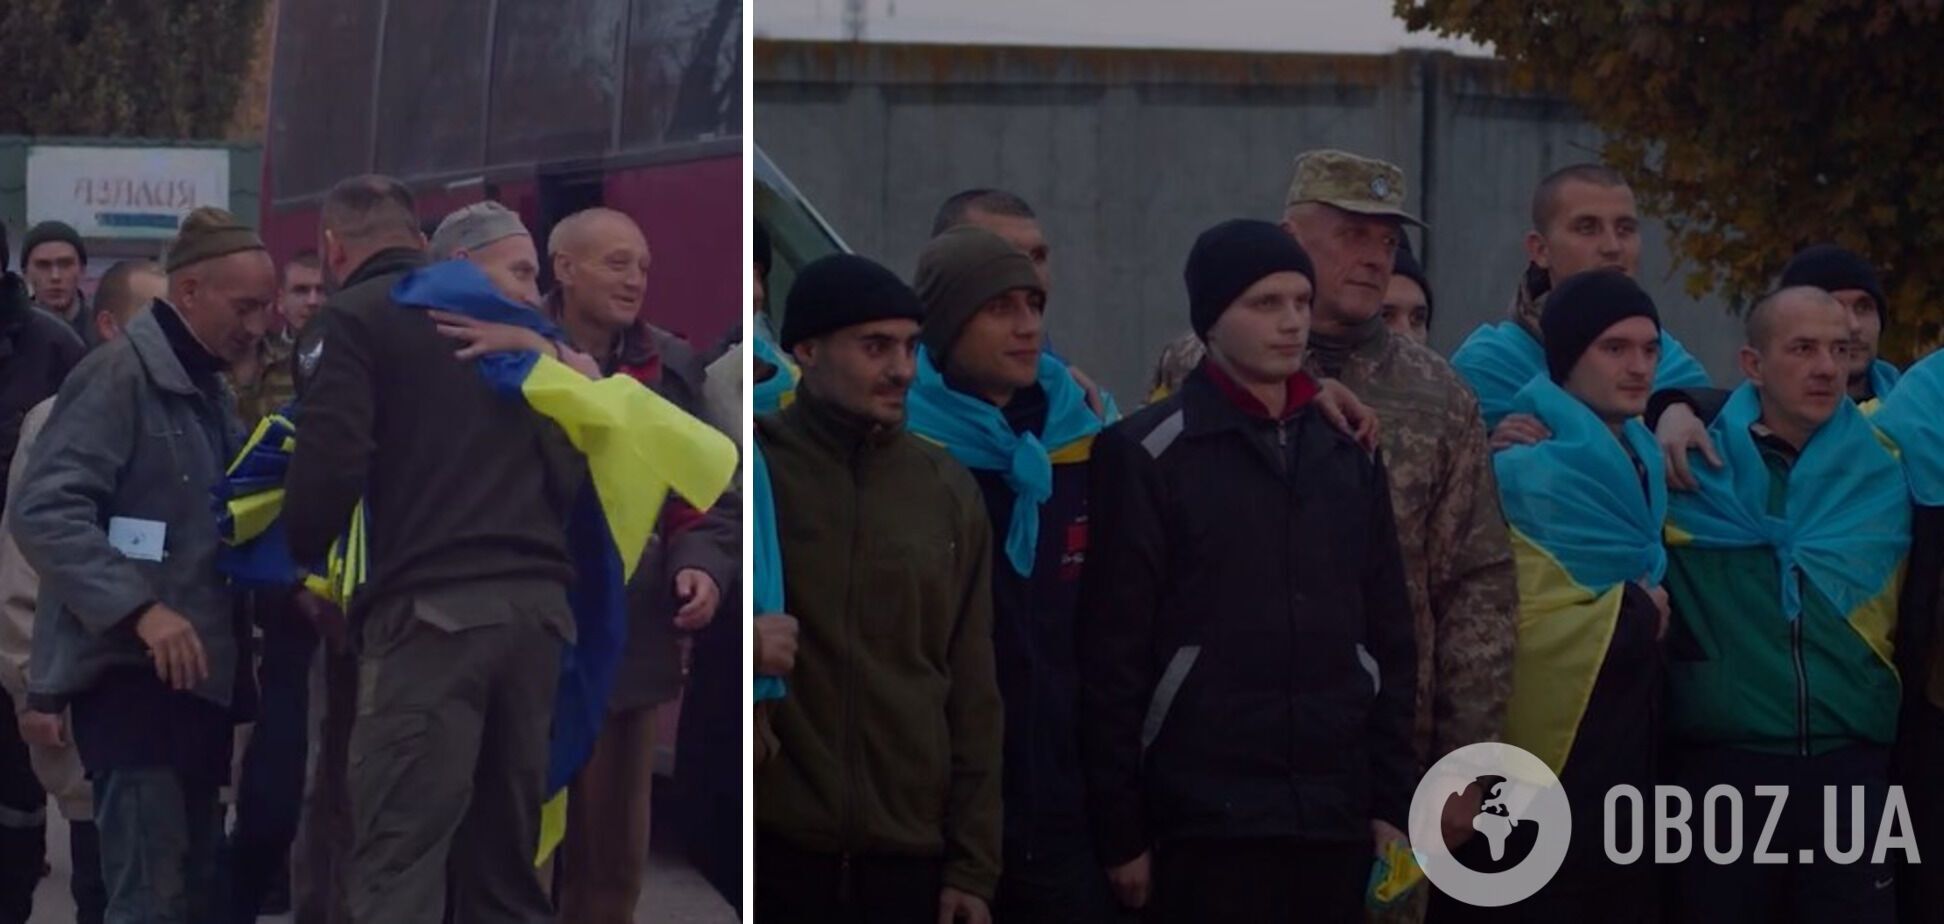 "Солнце, я дома": в сети показали трогательные кадры возвращения из плена украинских пограничников. Видео